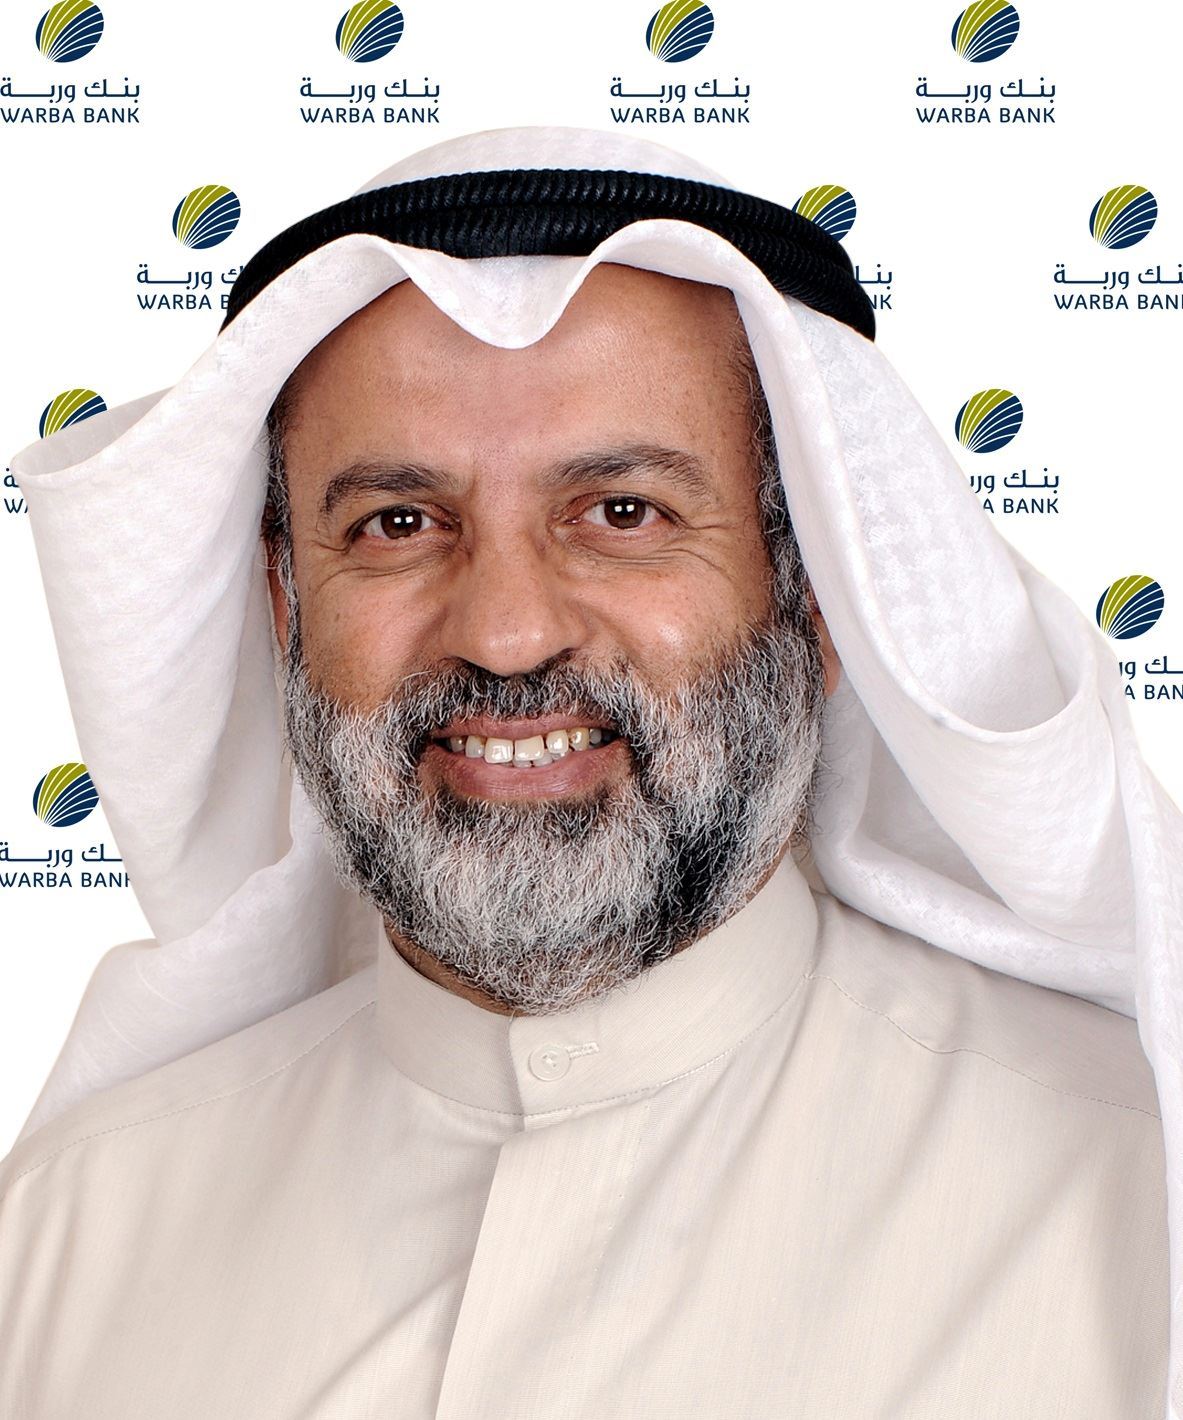 السيد عبد الوهاب عبد الله الحوطي ... رئيس مجلس إدارة بنك وربة